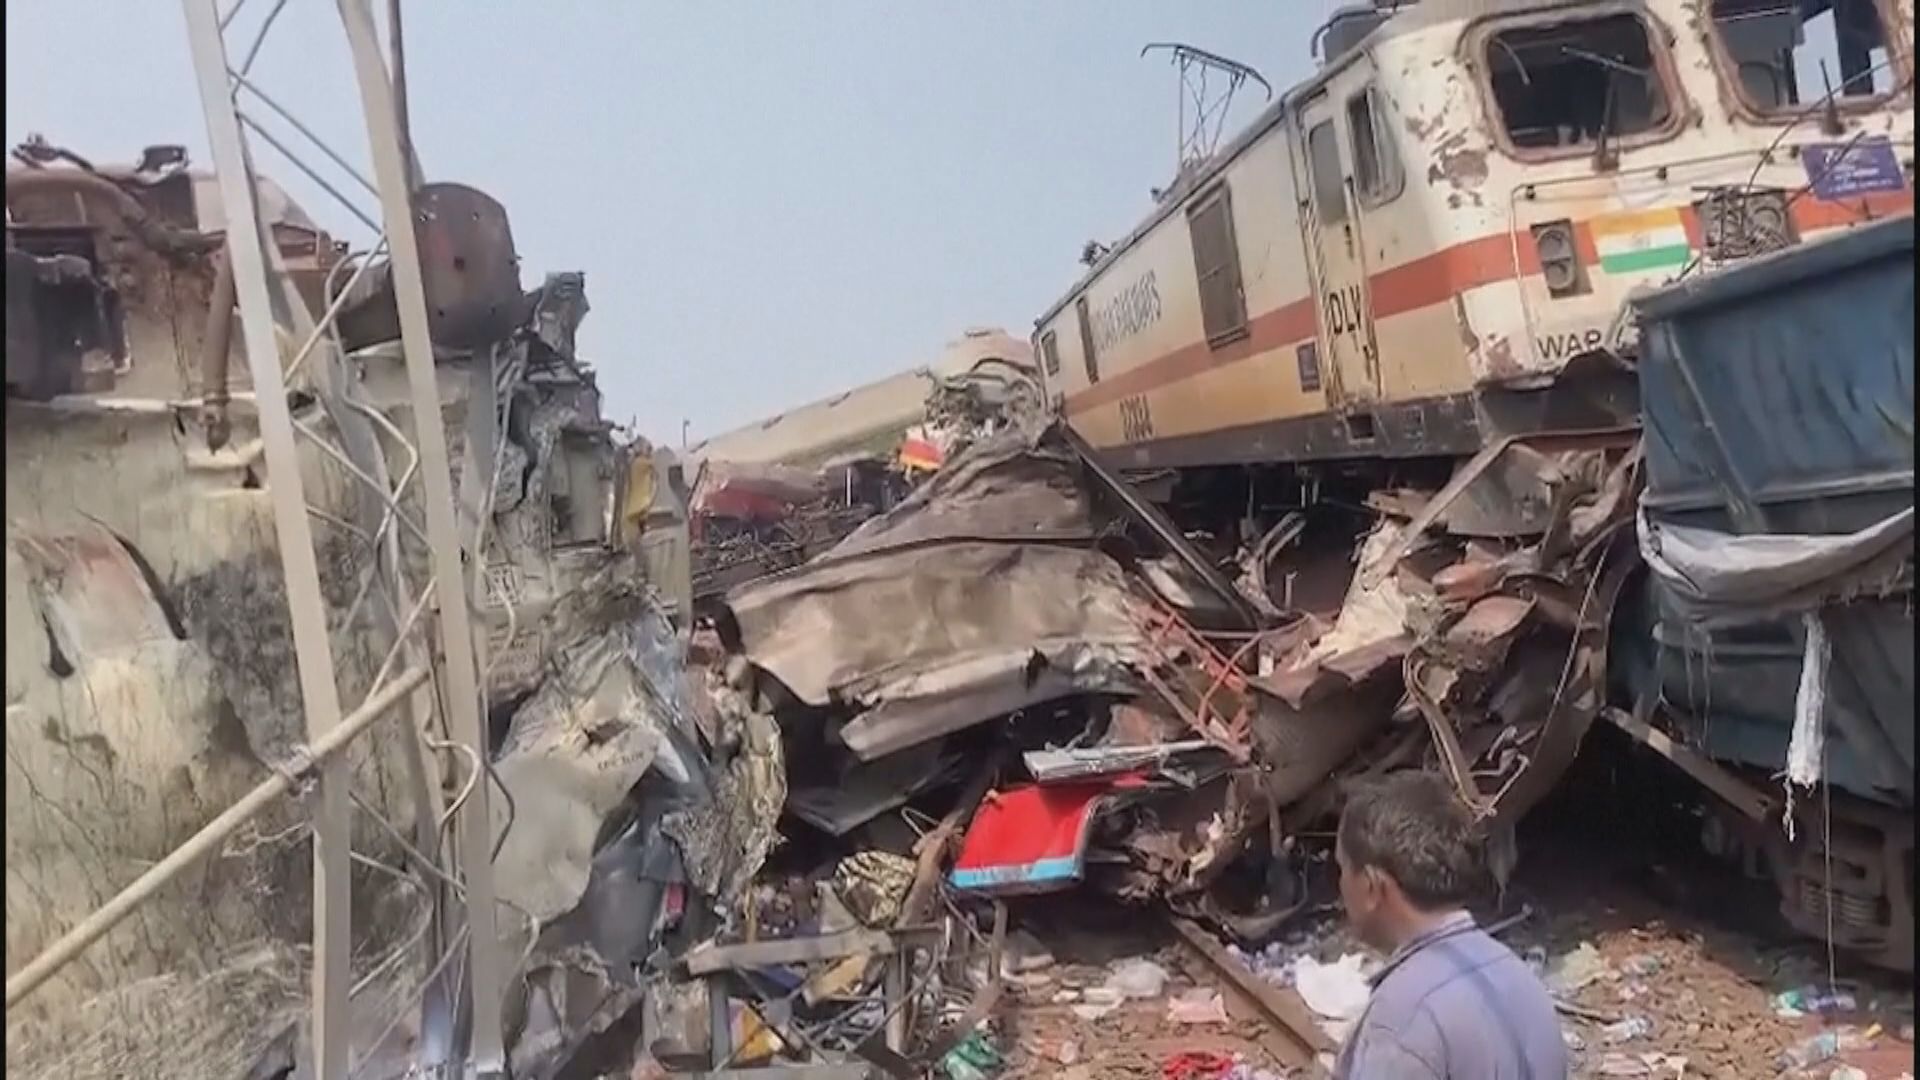 印度火車上月相撞慘劇 當局拘捕三人